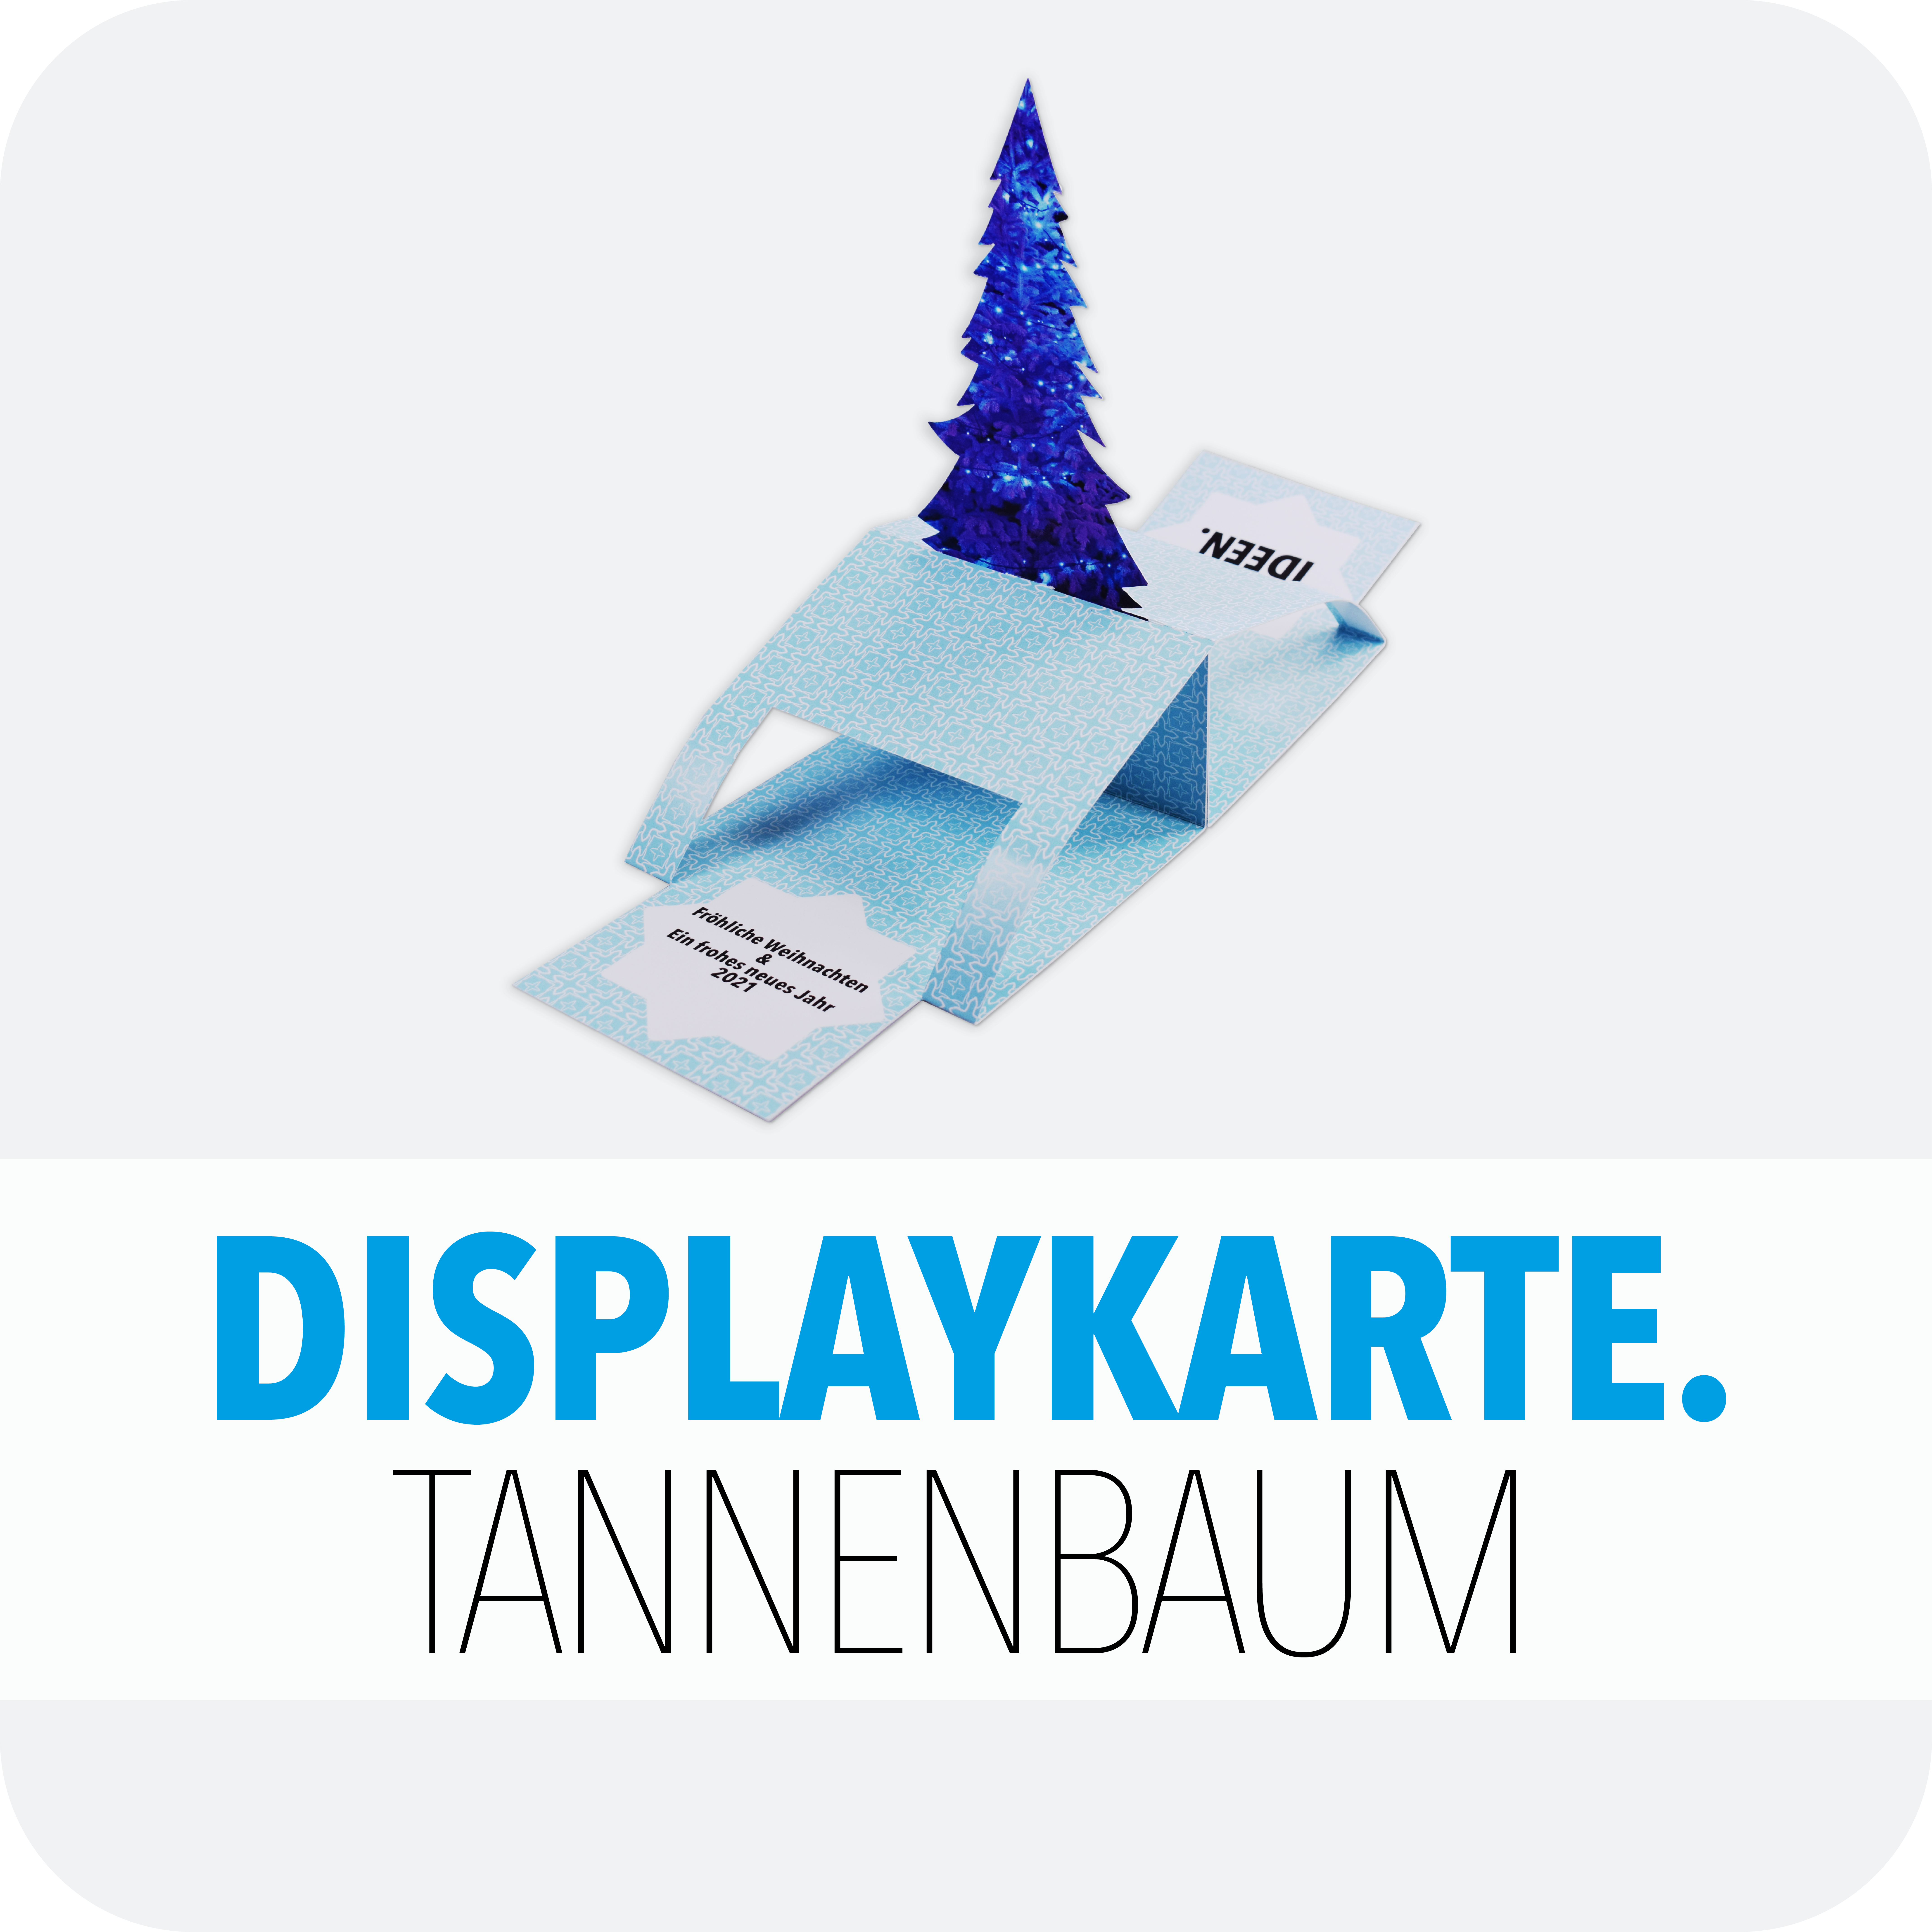 Display-Karte-Tannenbaum